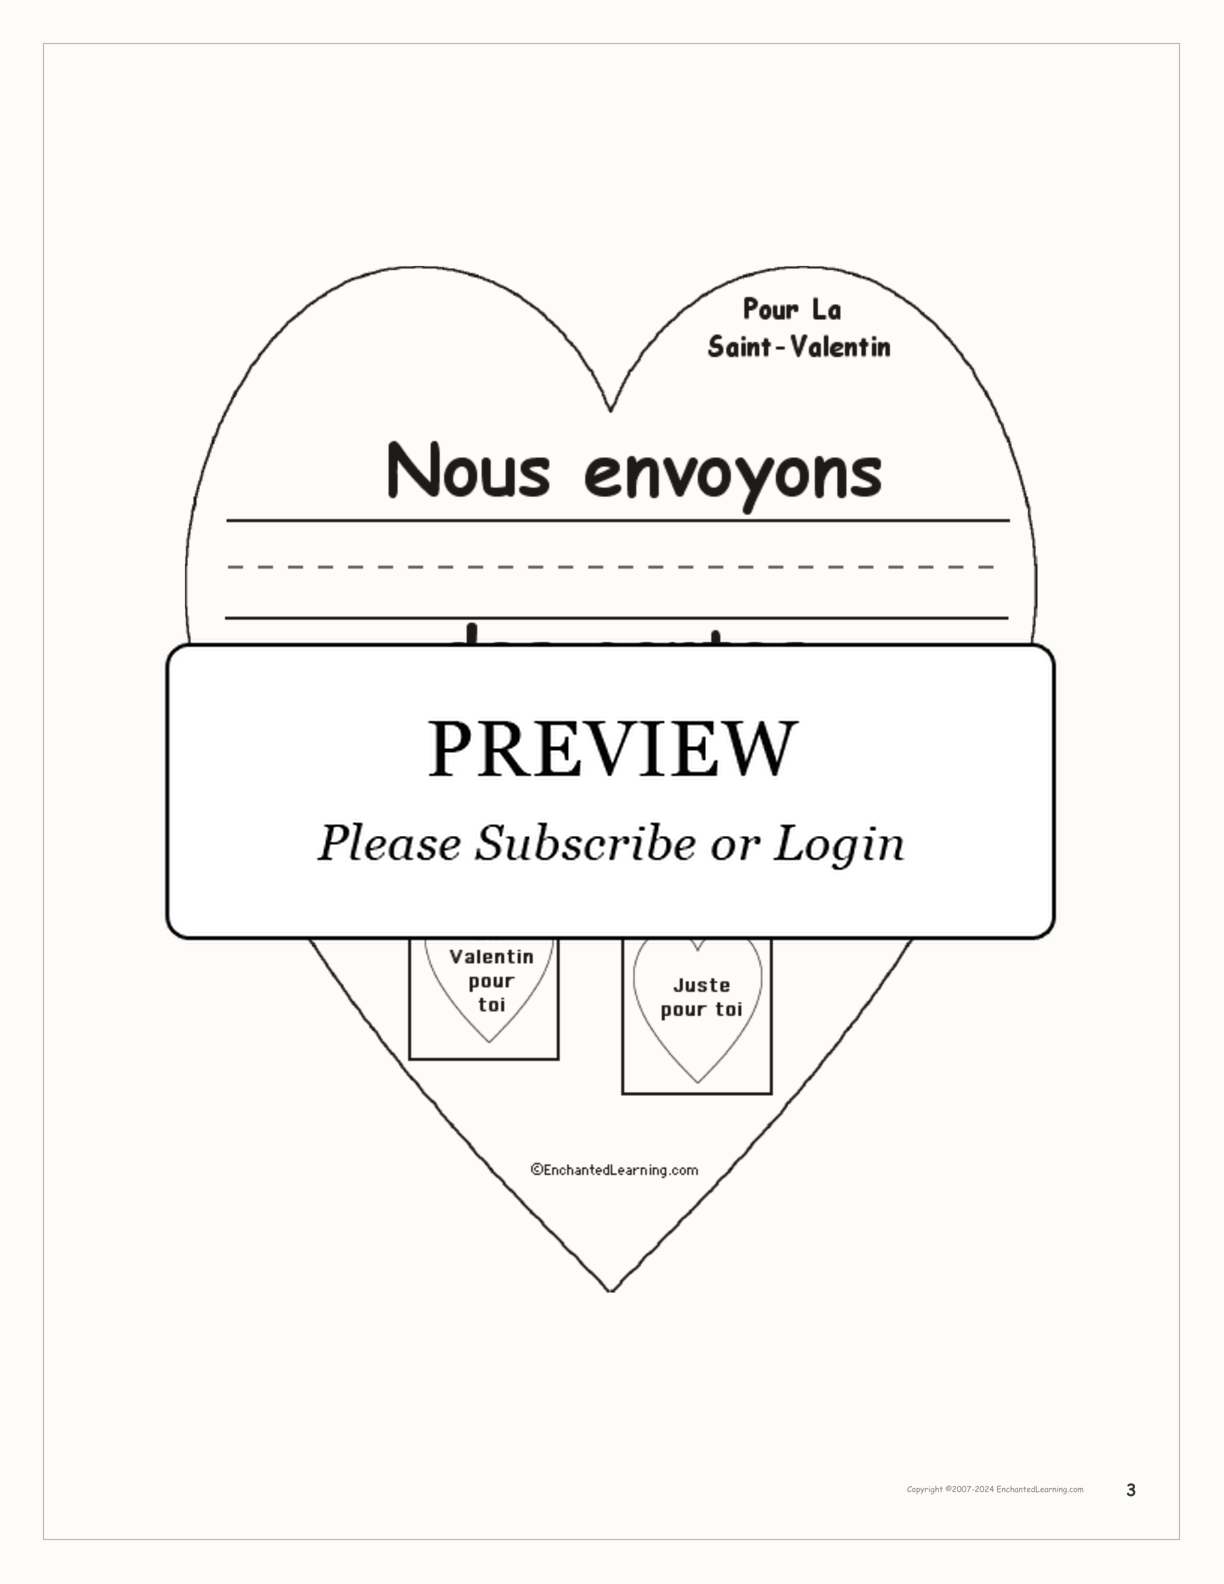 Pour la Saint-Valentin interactive worksheet page 3